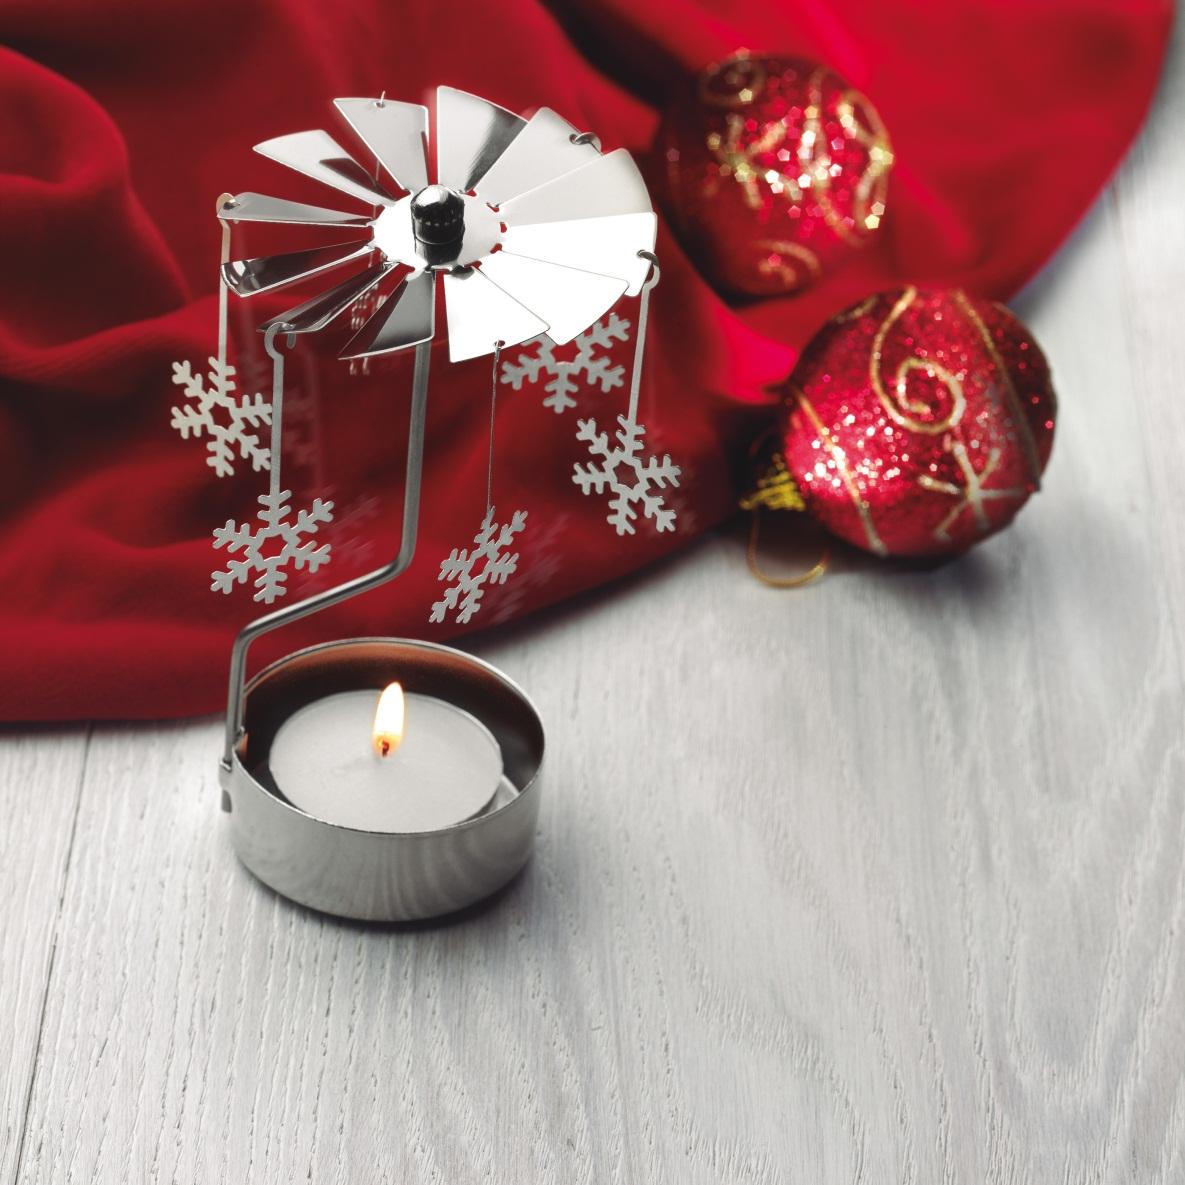 24) CX1338: Tradycyjna świąteczna dekoracja. Kiedy pali się świeczka, ciepłe powietrze unosi się do góry i 6 śniegowych płatków kręci się dookoła.